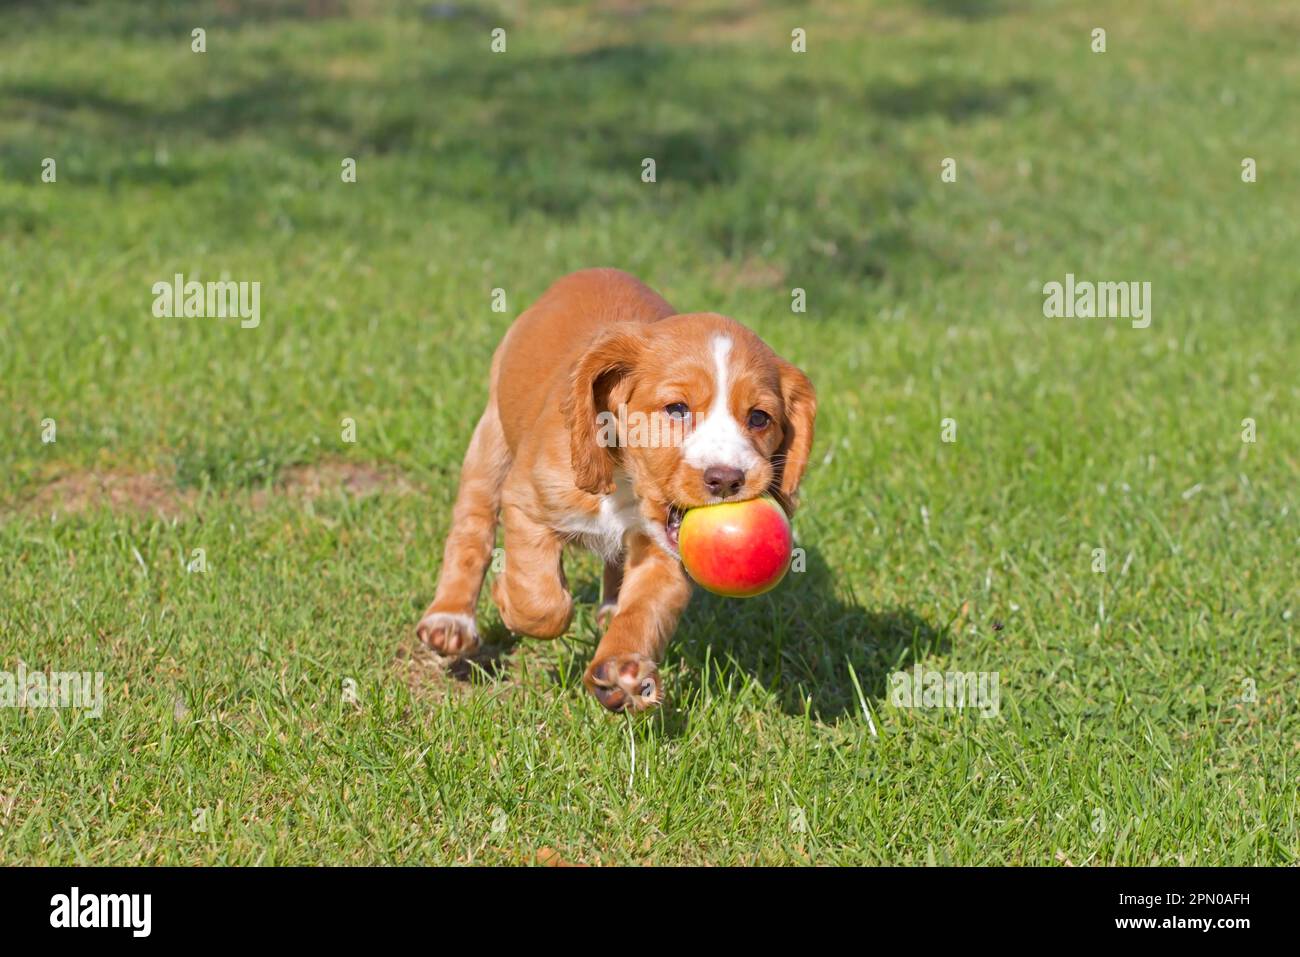 Haushund, englischer Cocker Spaniel, Hündchen, läuft mit Apfel im Mund, spielt auf dem Rasen, Norfolk, England, Großbritannien Stockfoto